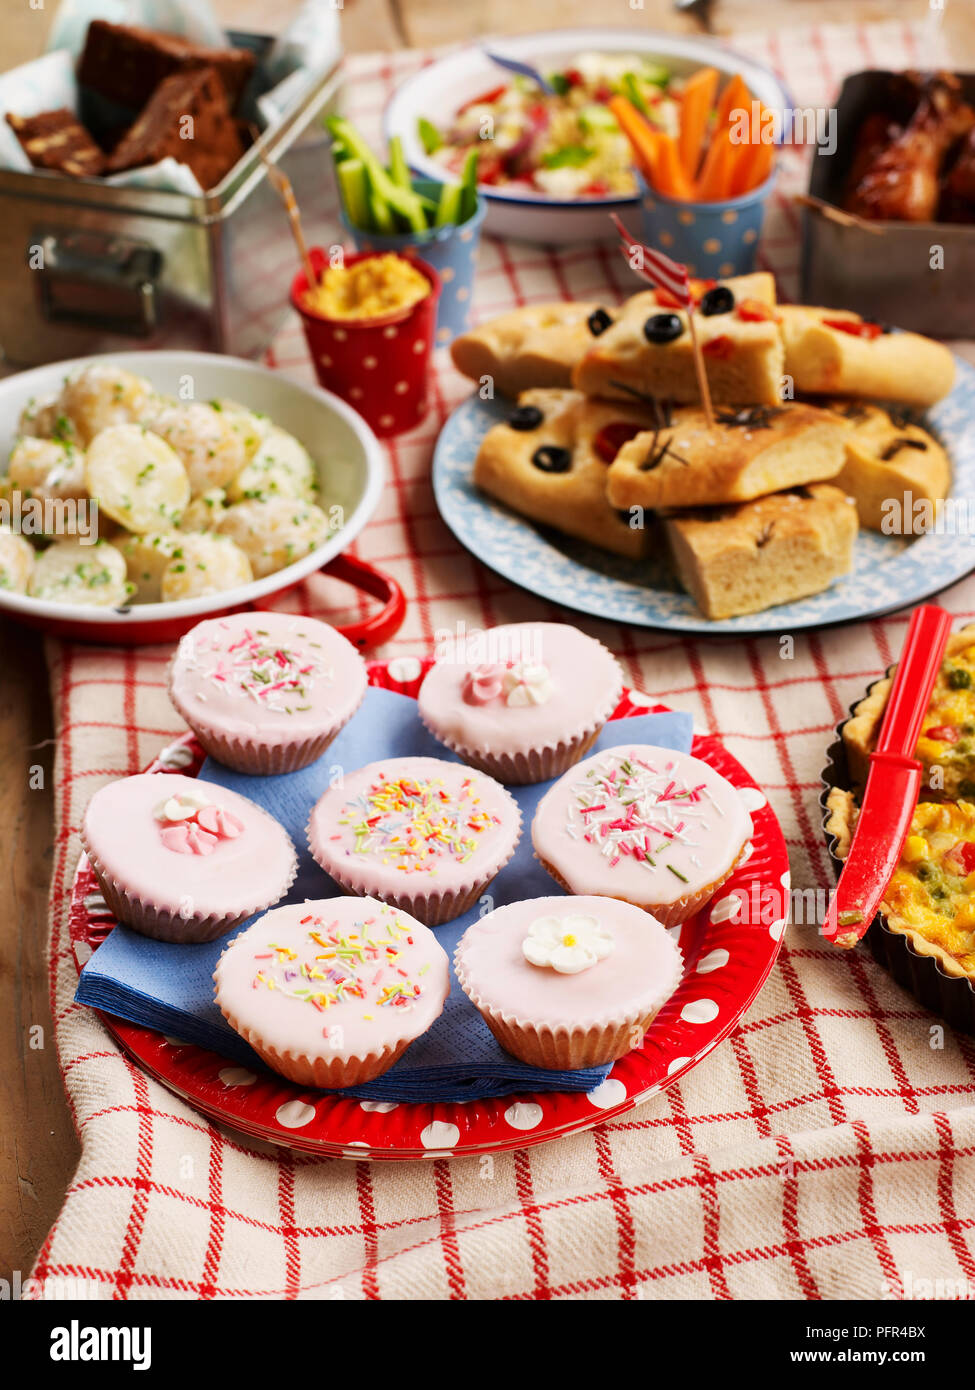 Sélection de plats sucrés et salés, cupcakes, salade de pommes de terre, pain focaccia, disposés sur table, cuisine de fête Banque D'Images